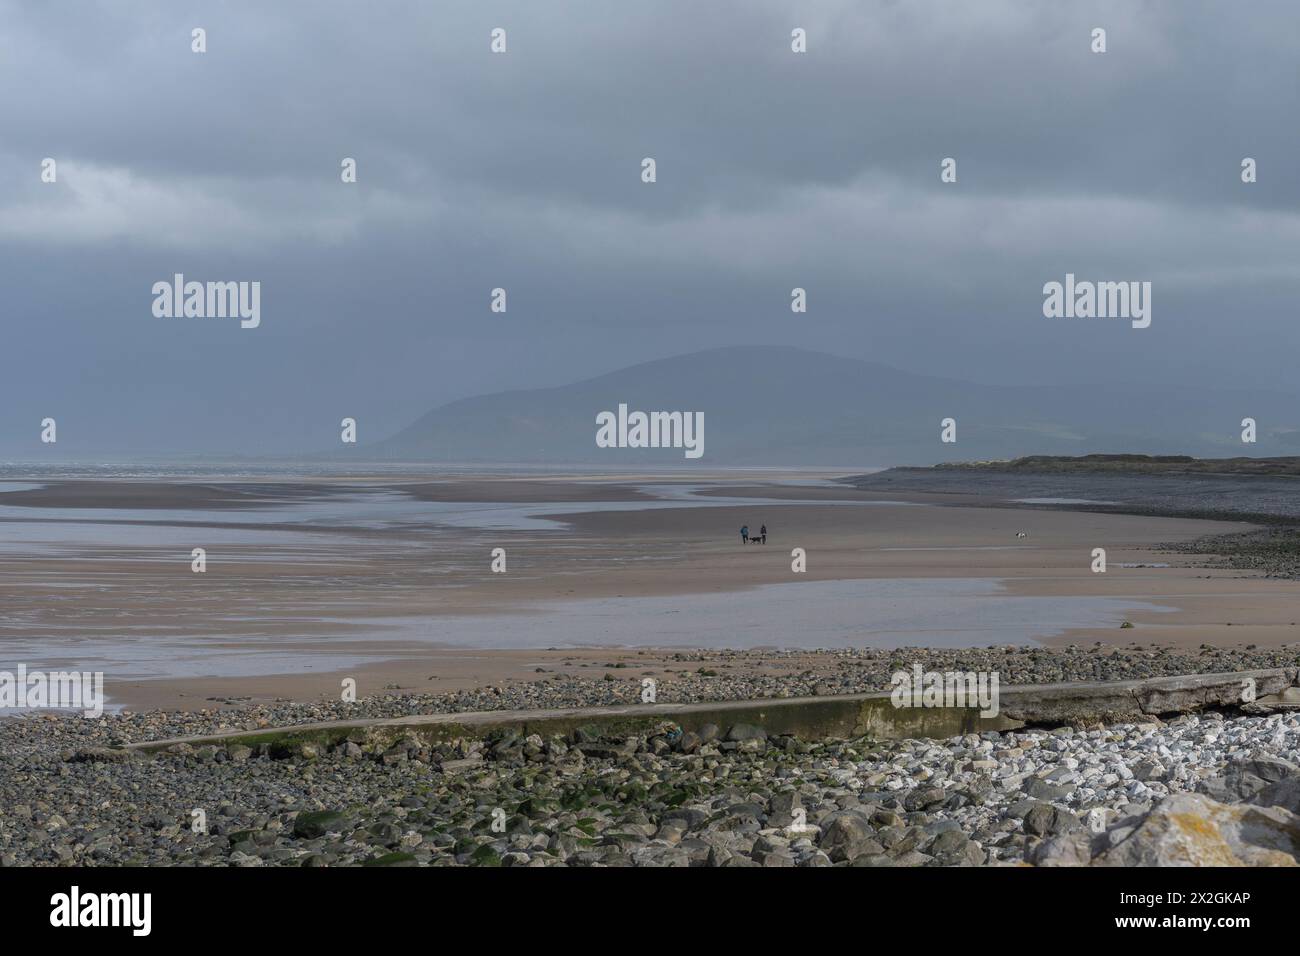 Vaste plage sur la rive ouest, Walney Island, Barrow-in-Furness, Cumbria, sous un ciel orageux gris avec la montagne Black Combe en arrière-plan. Banque D'Images